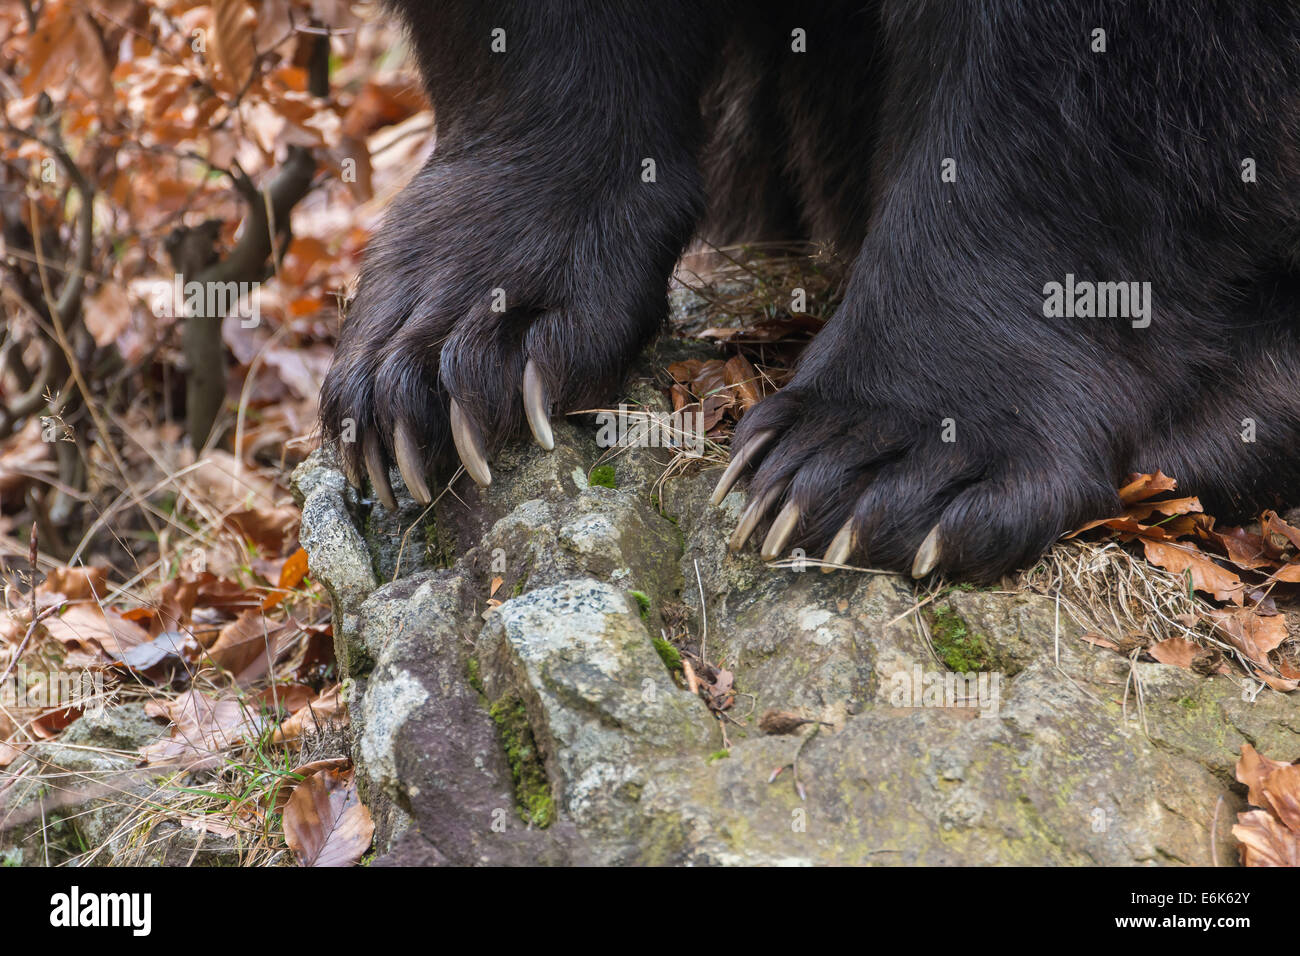 Braunbär (Ursus arctos), Klauen, Tiergehege, Nationalpark Bayerischer Wald, Bayern, Deutschland Stockfoto